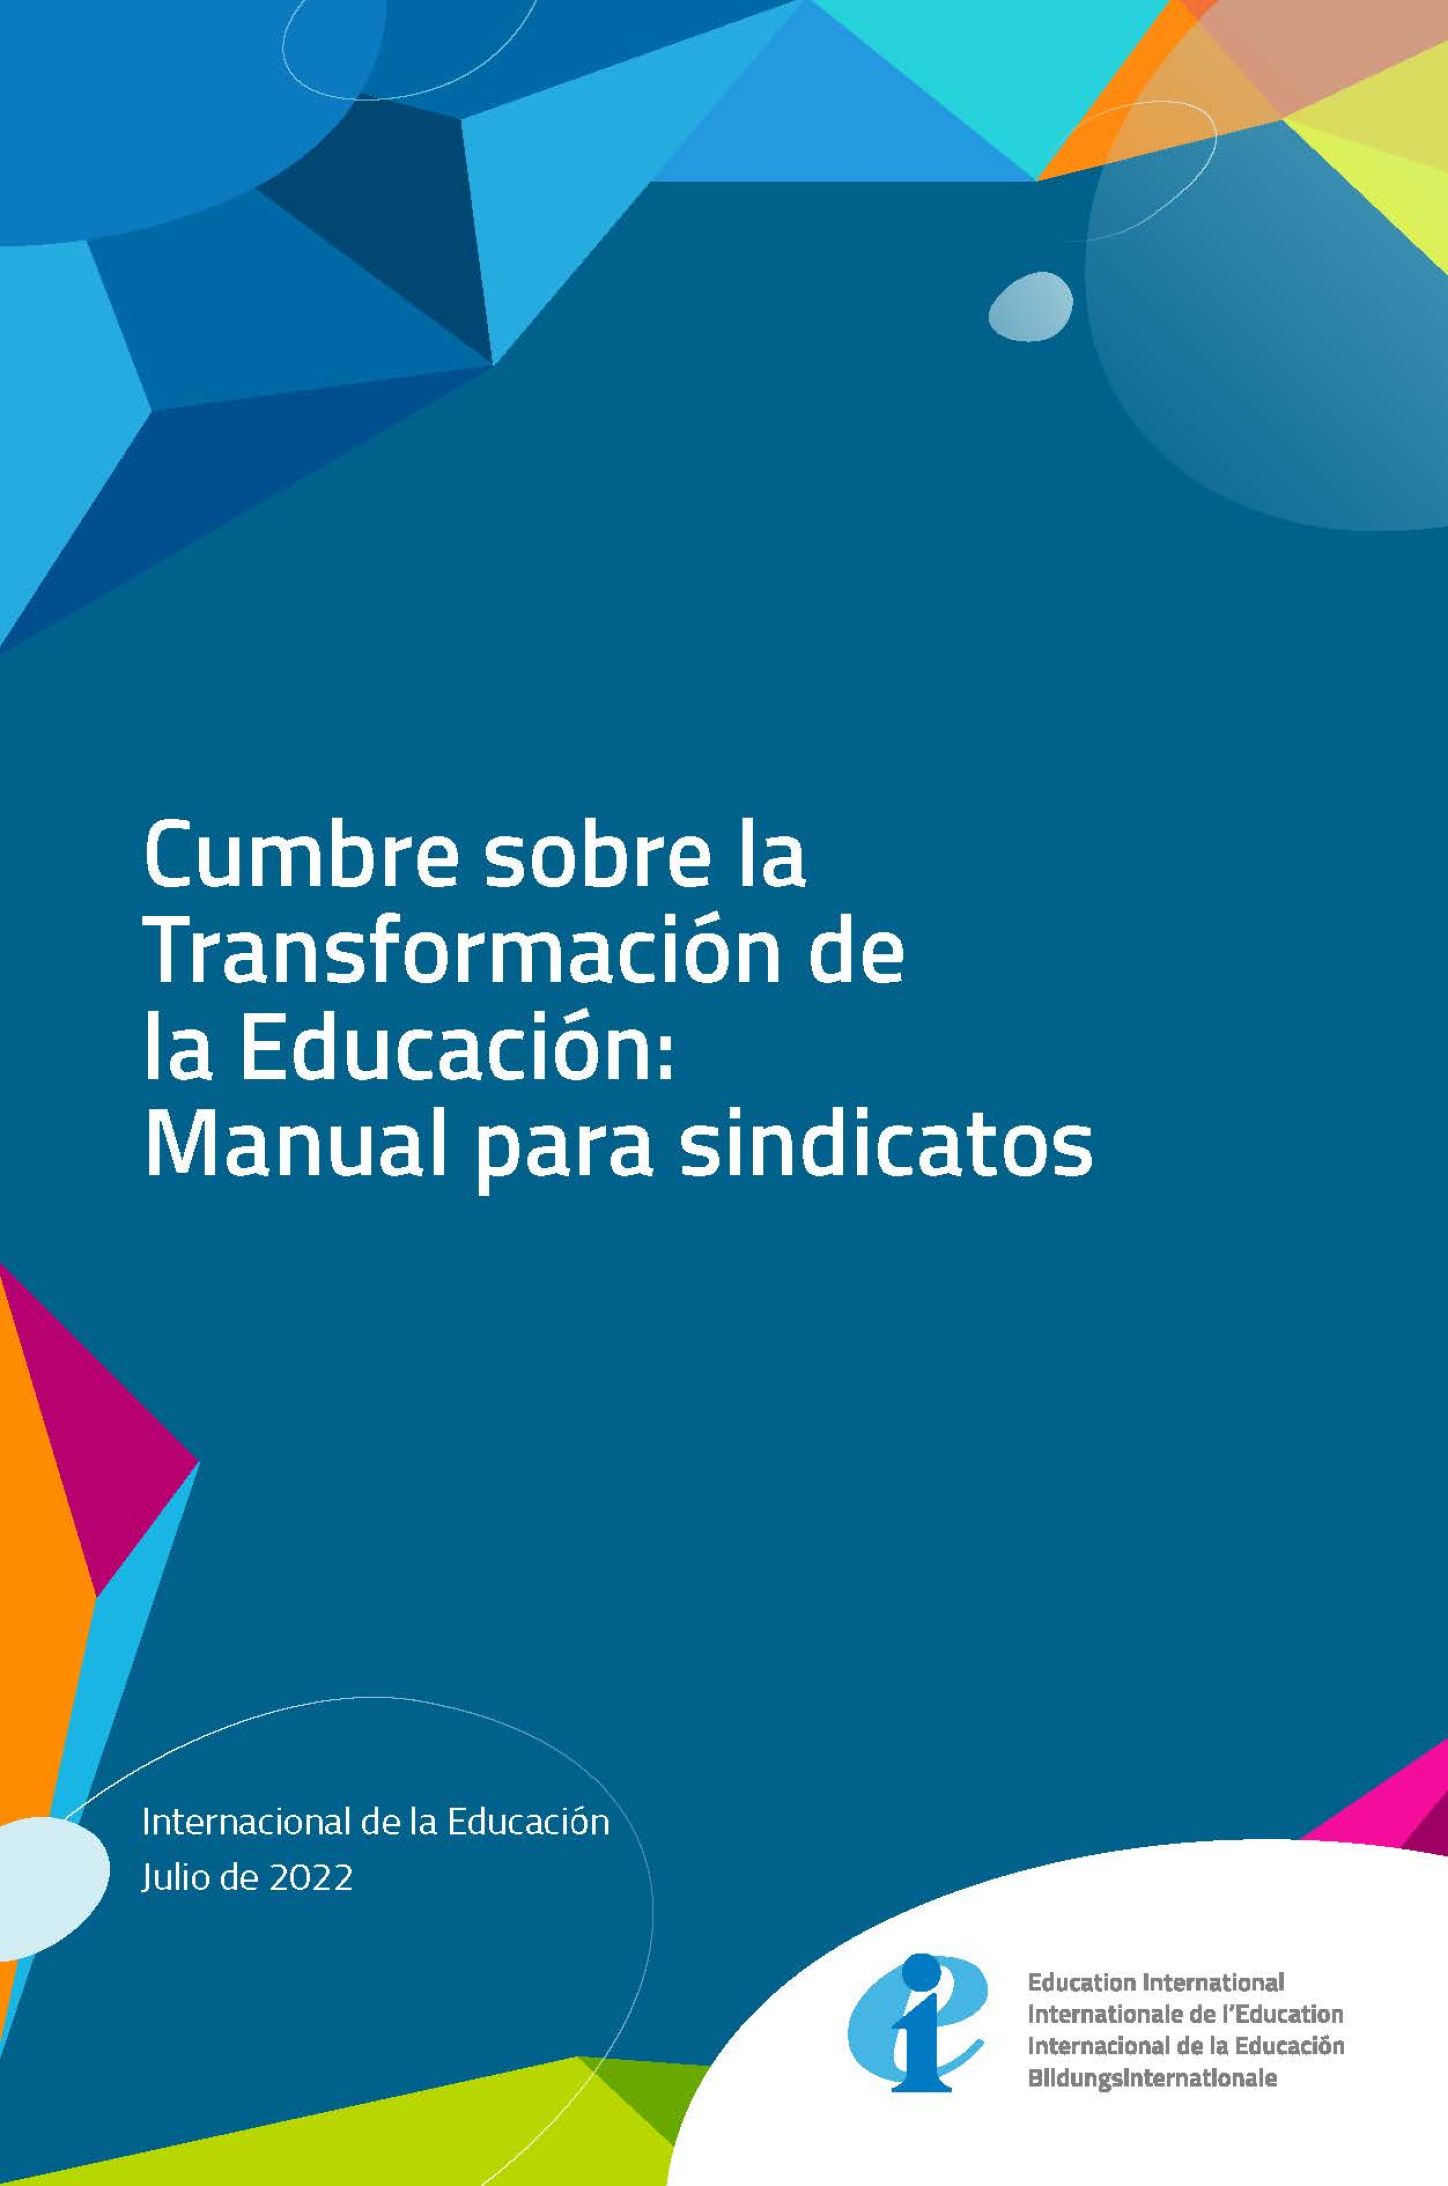 Cumbre sobre la Transformación de la Educación: Manual para sindicatos